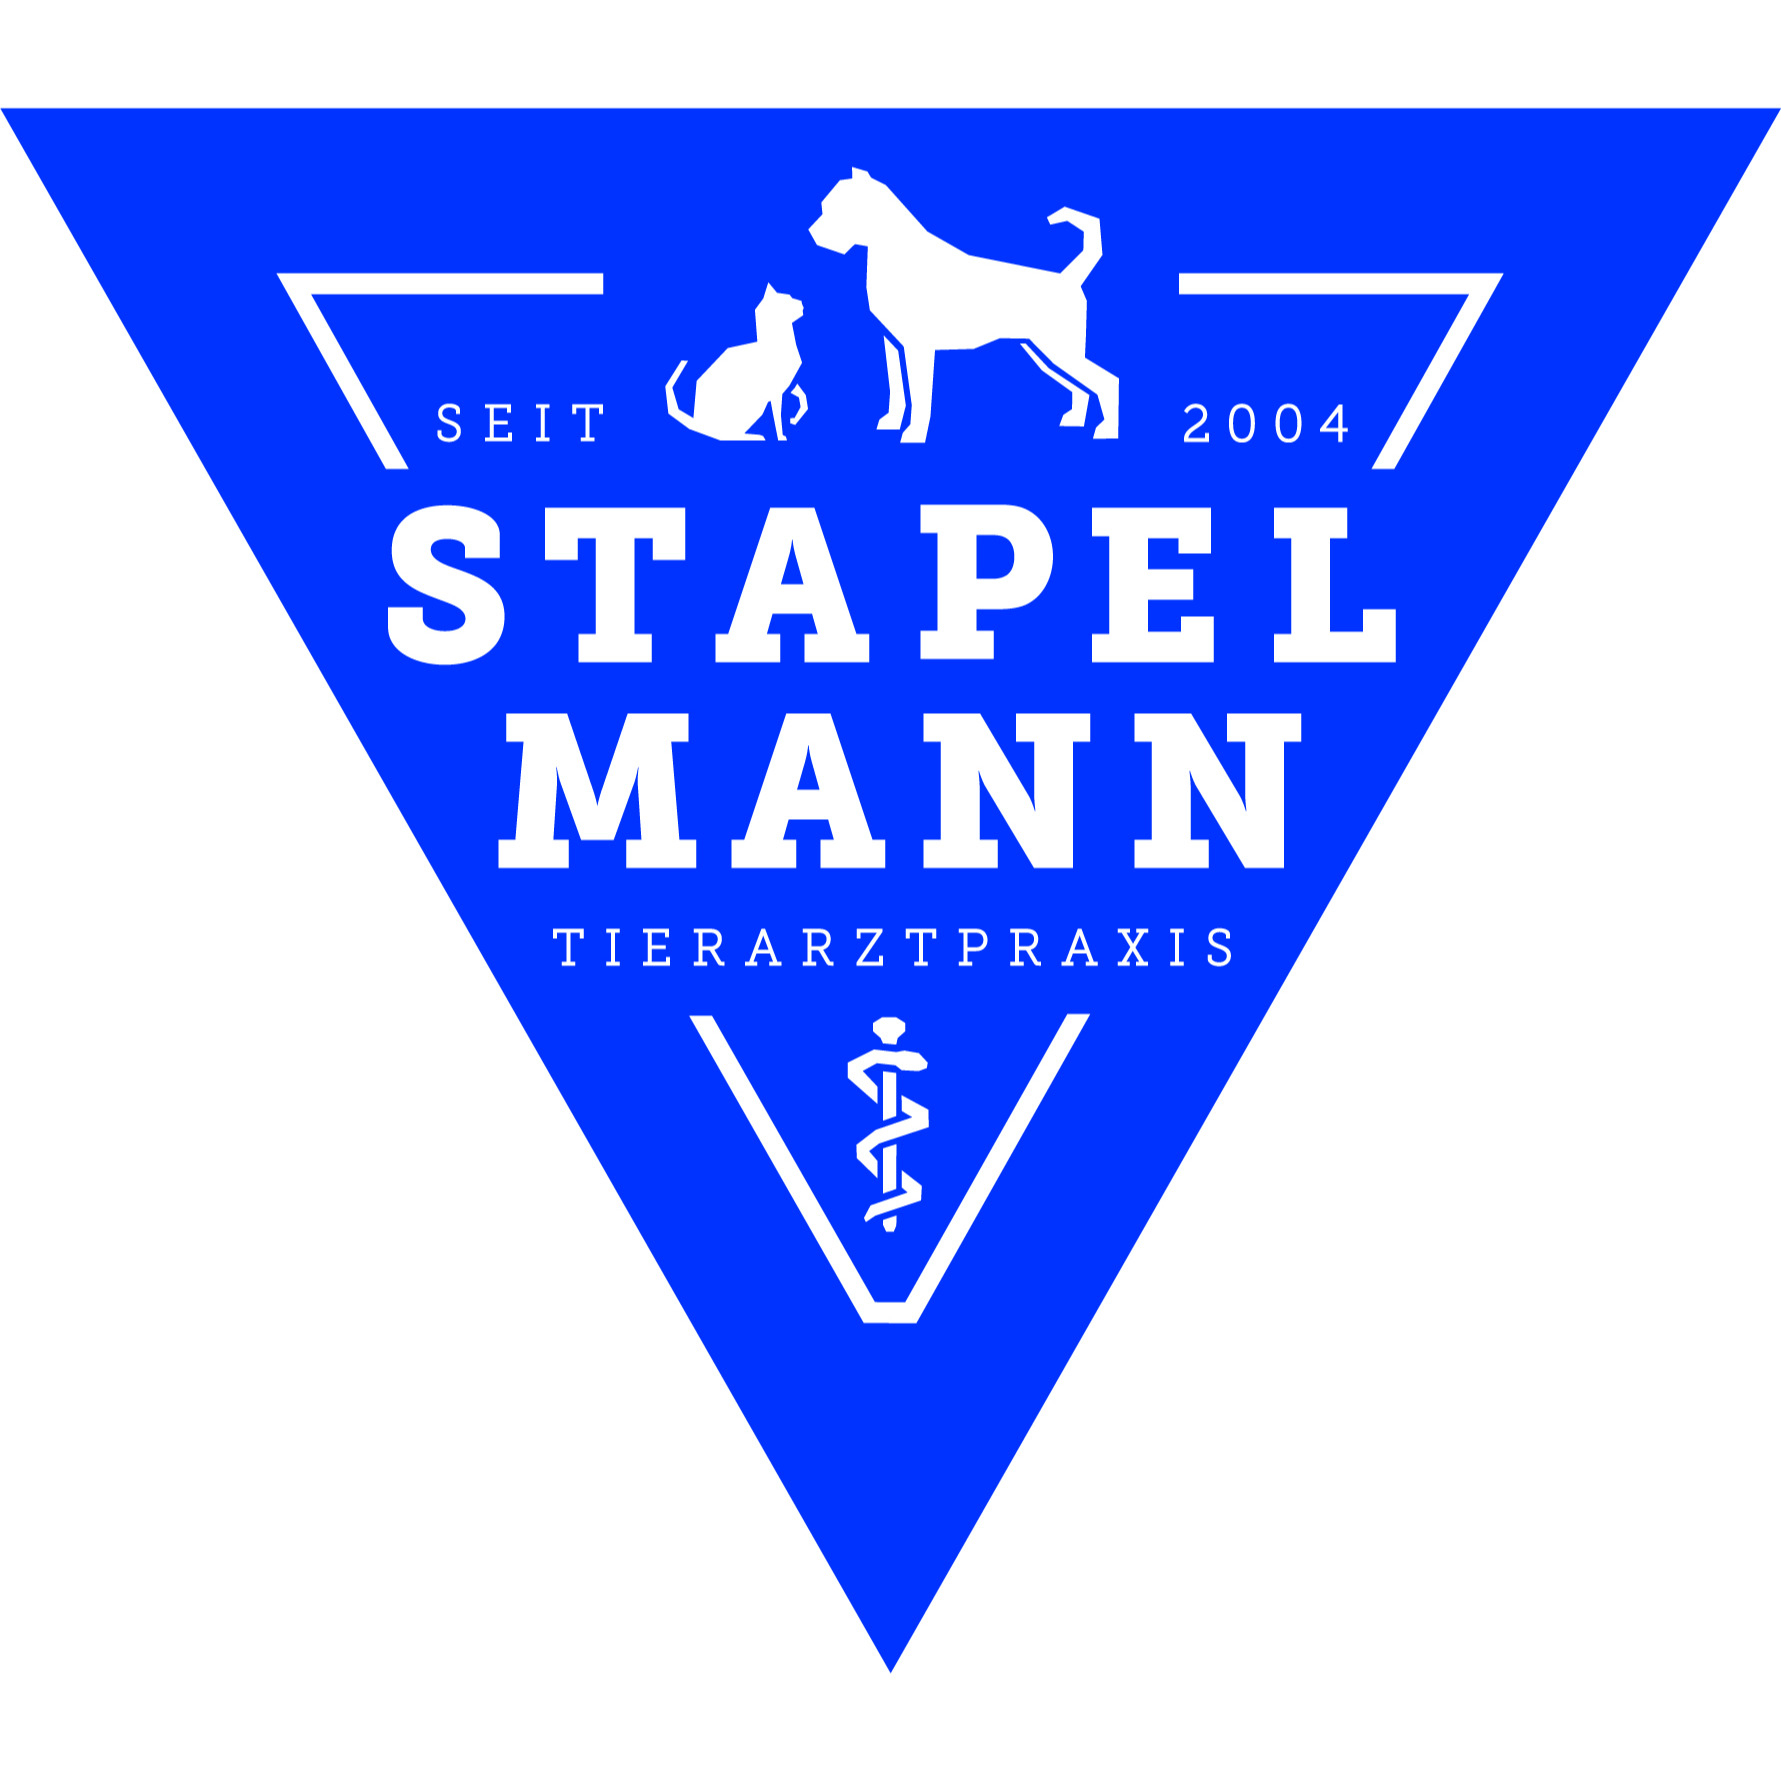 Tierarztpraxis Sabine Stapelmann in Mülheim an der Ruhr - Logo